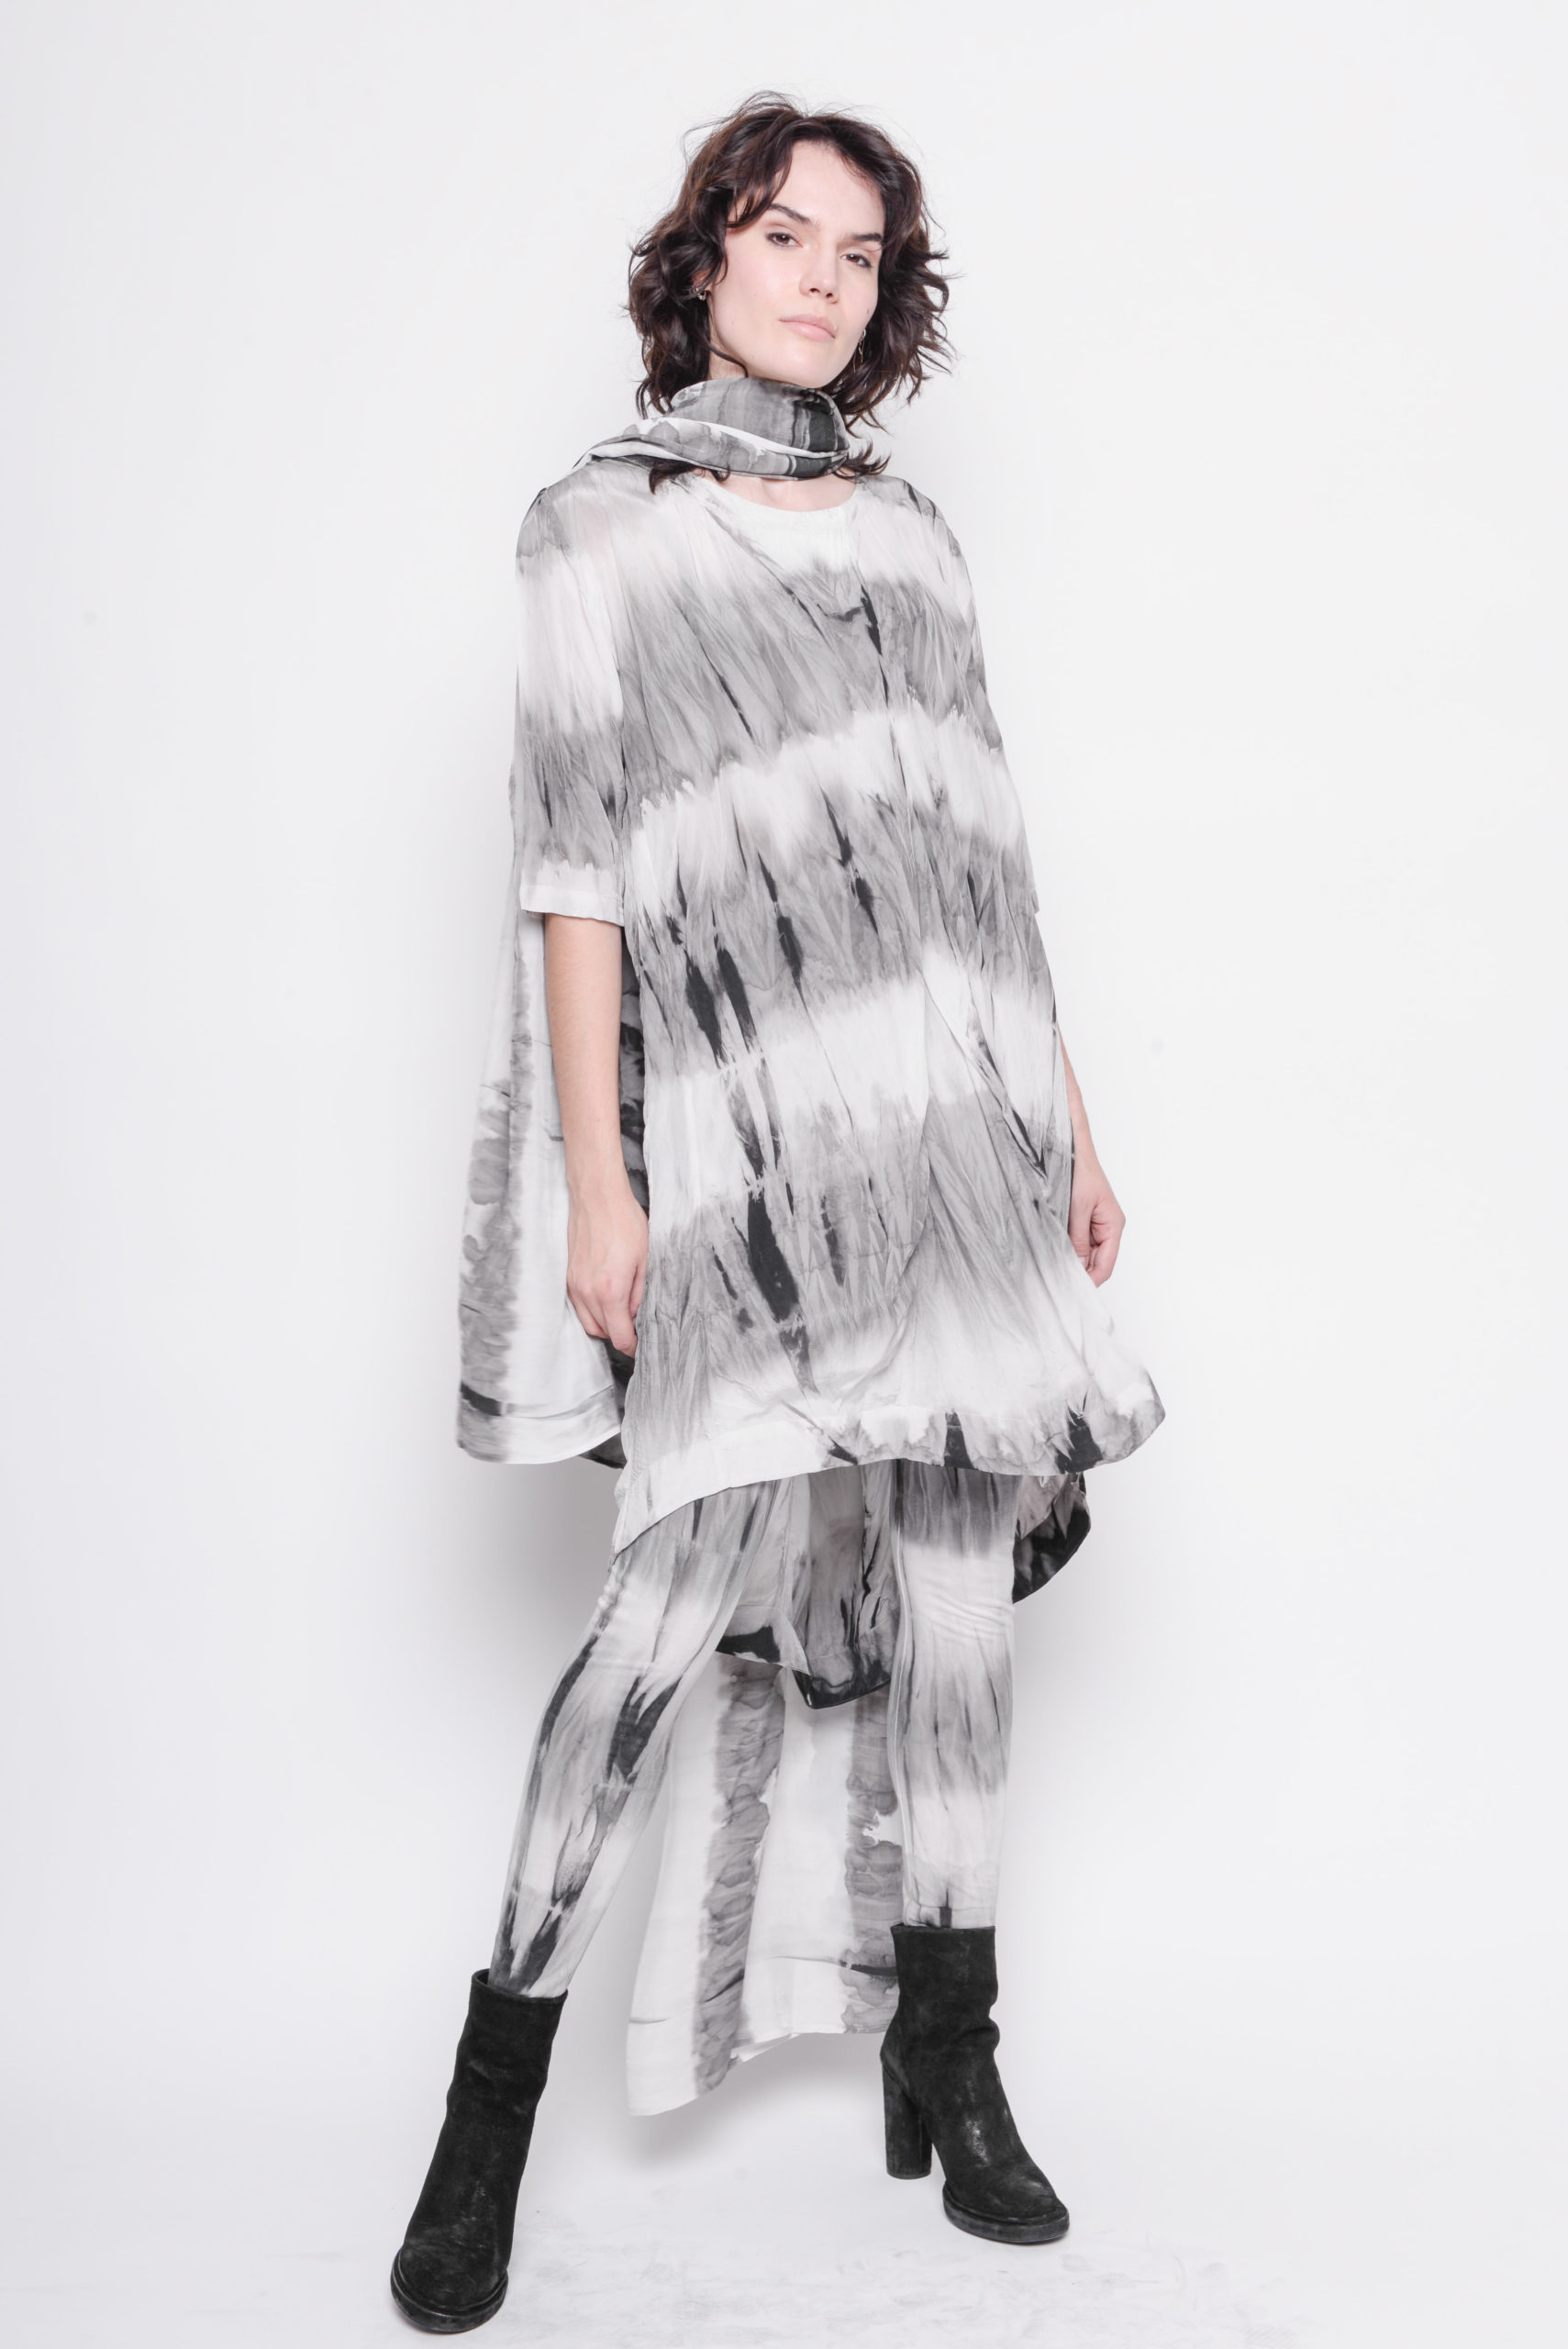 Myre Robe elektropositive Dress I´m in the mood for love - Black By K&M - Madame Butterfly -  Tøj/brugskunst - Certificeret webshop